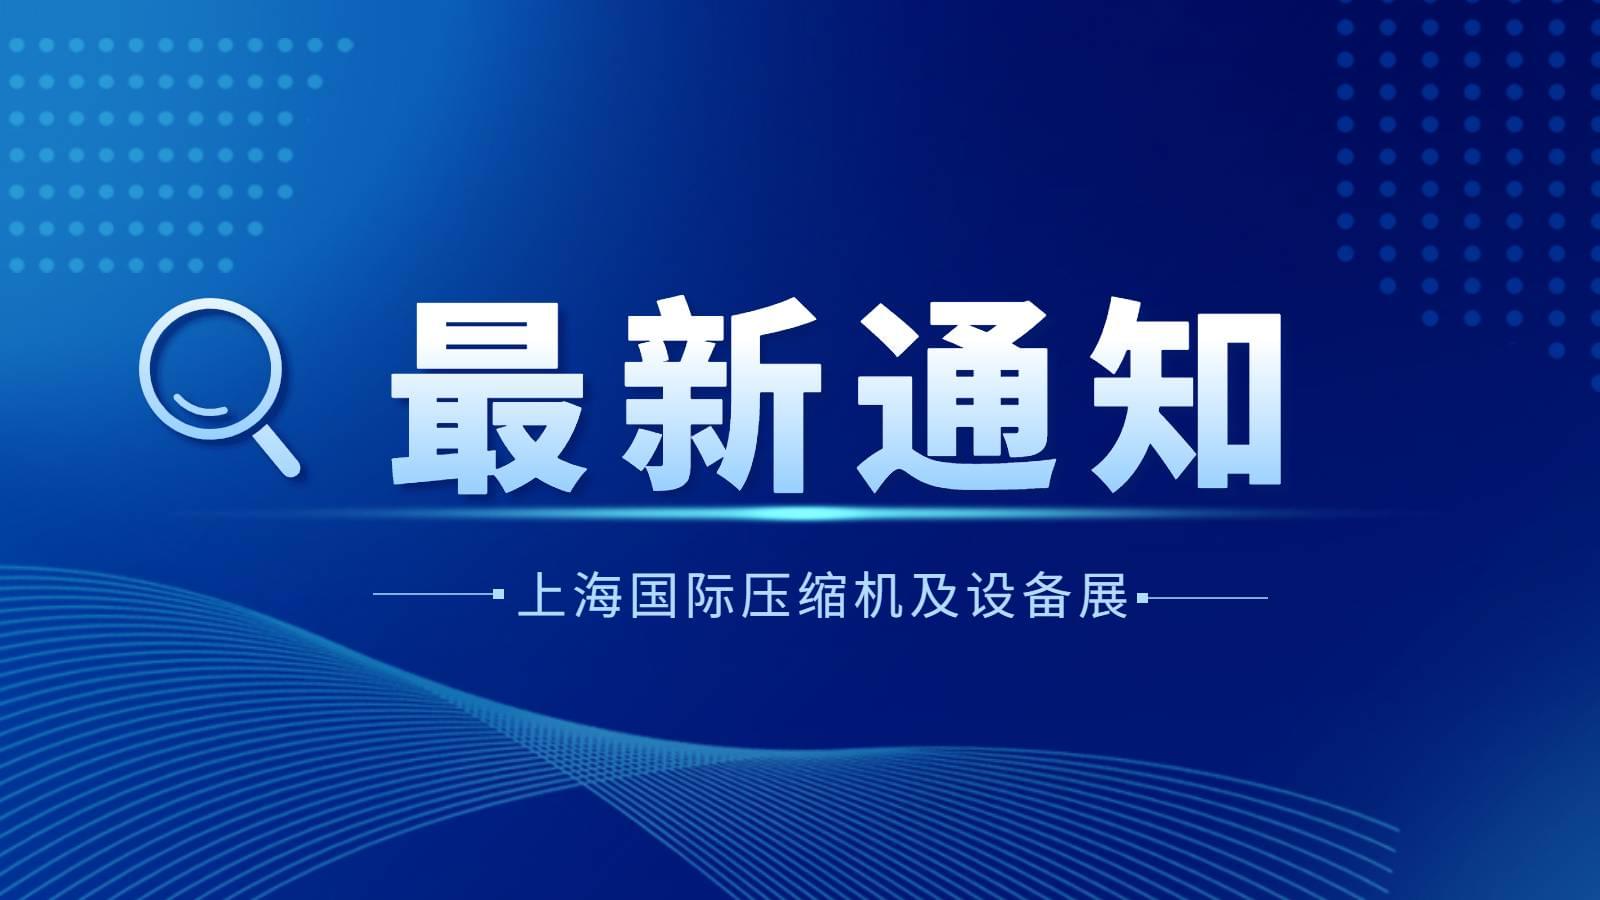 通知|2022上海国际压缩机及设备展览会延期